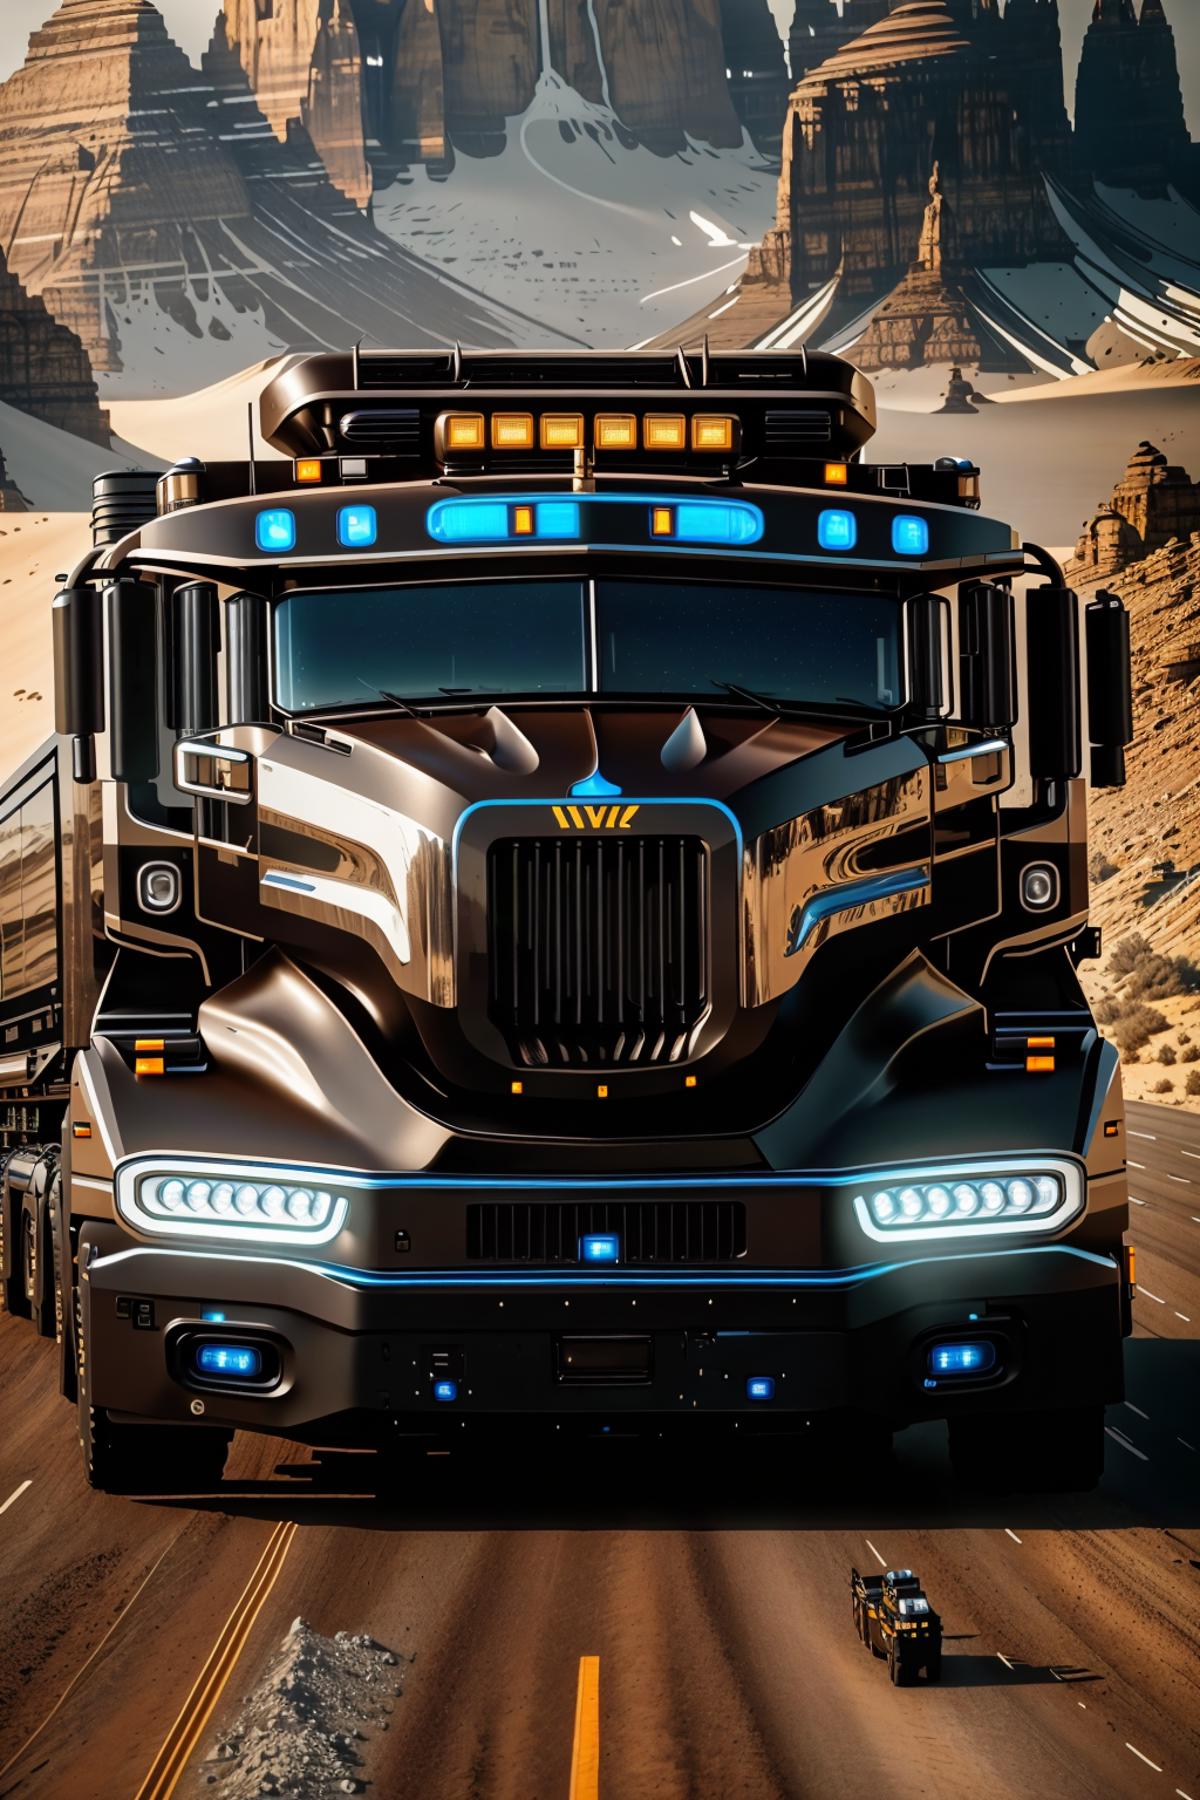 Futuristic Truck Generator Concept image by DeViLDoNia